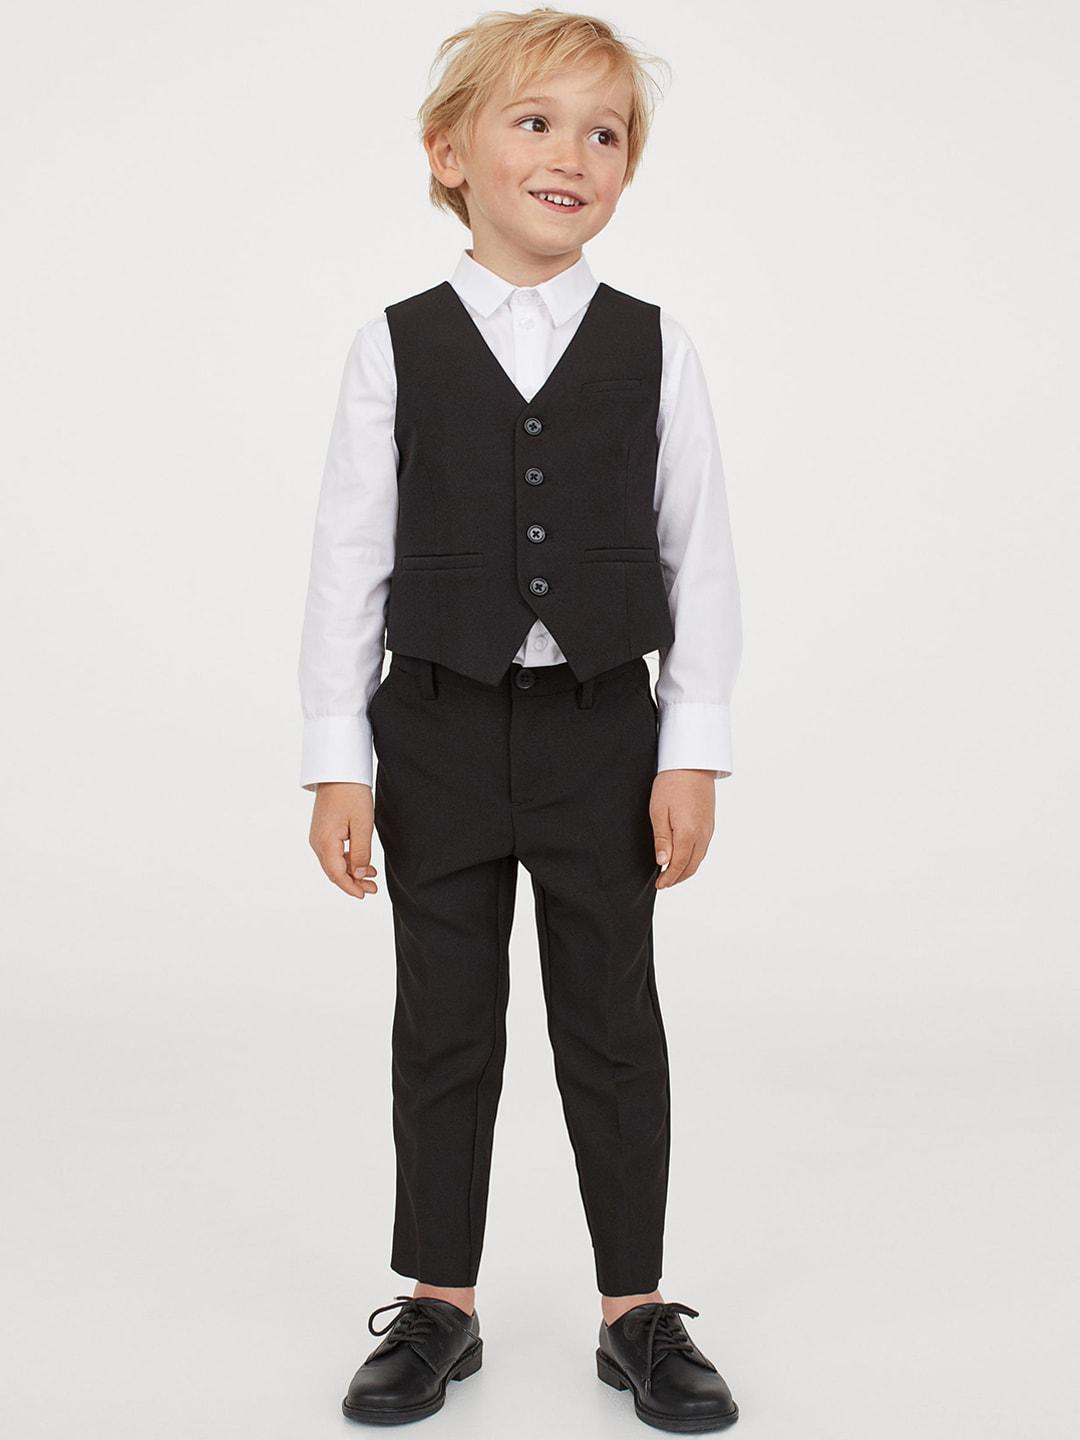 H&M Boys Black Solid Suit Trousers